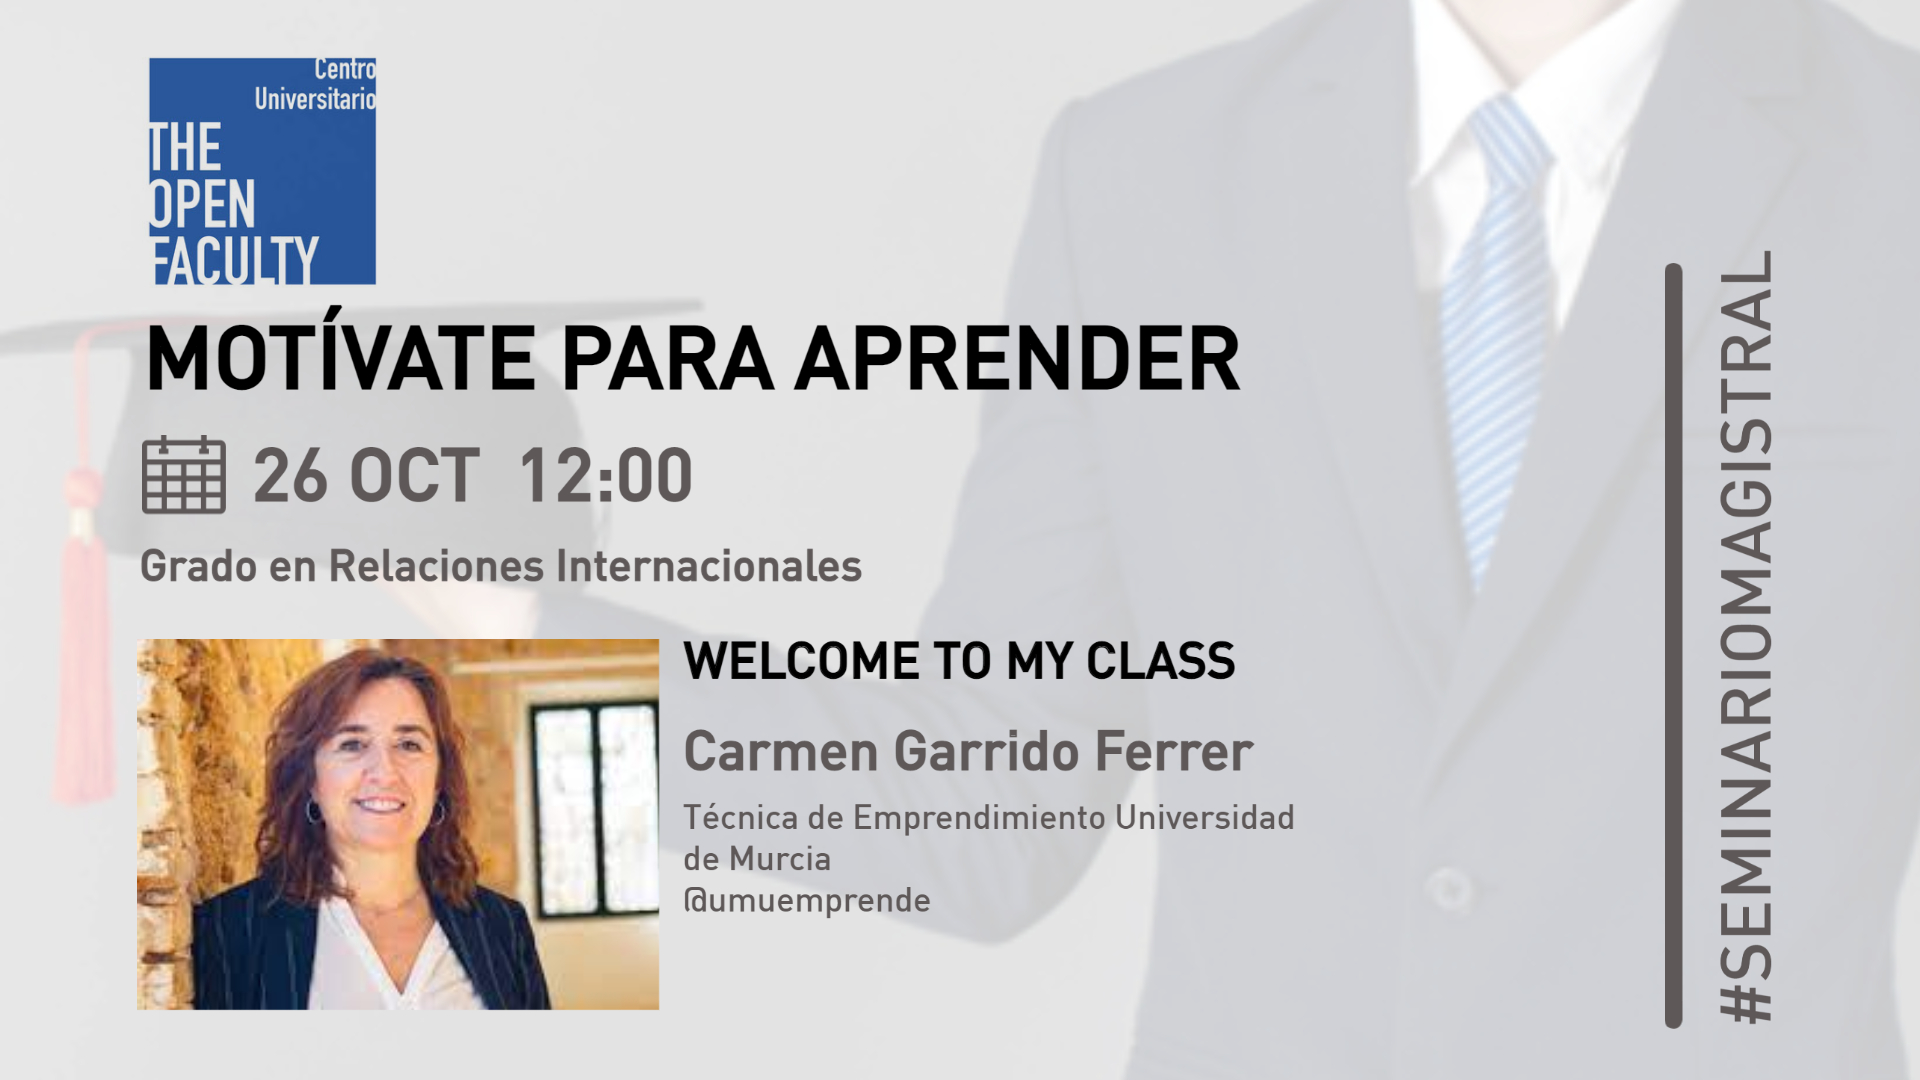 Carmen Garrido Ferrer imparte una charla sobre emprendimiento a los alumnos del Grado en Relaciones Internacionales de la Universidad de Murcia